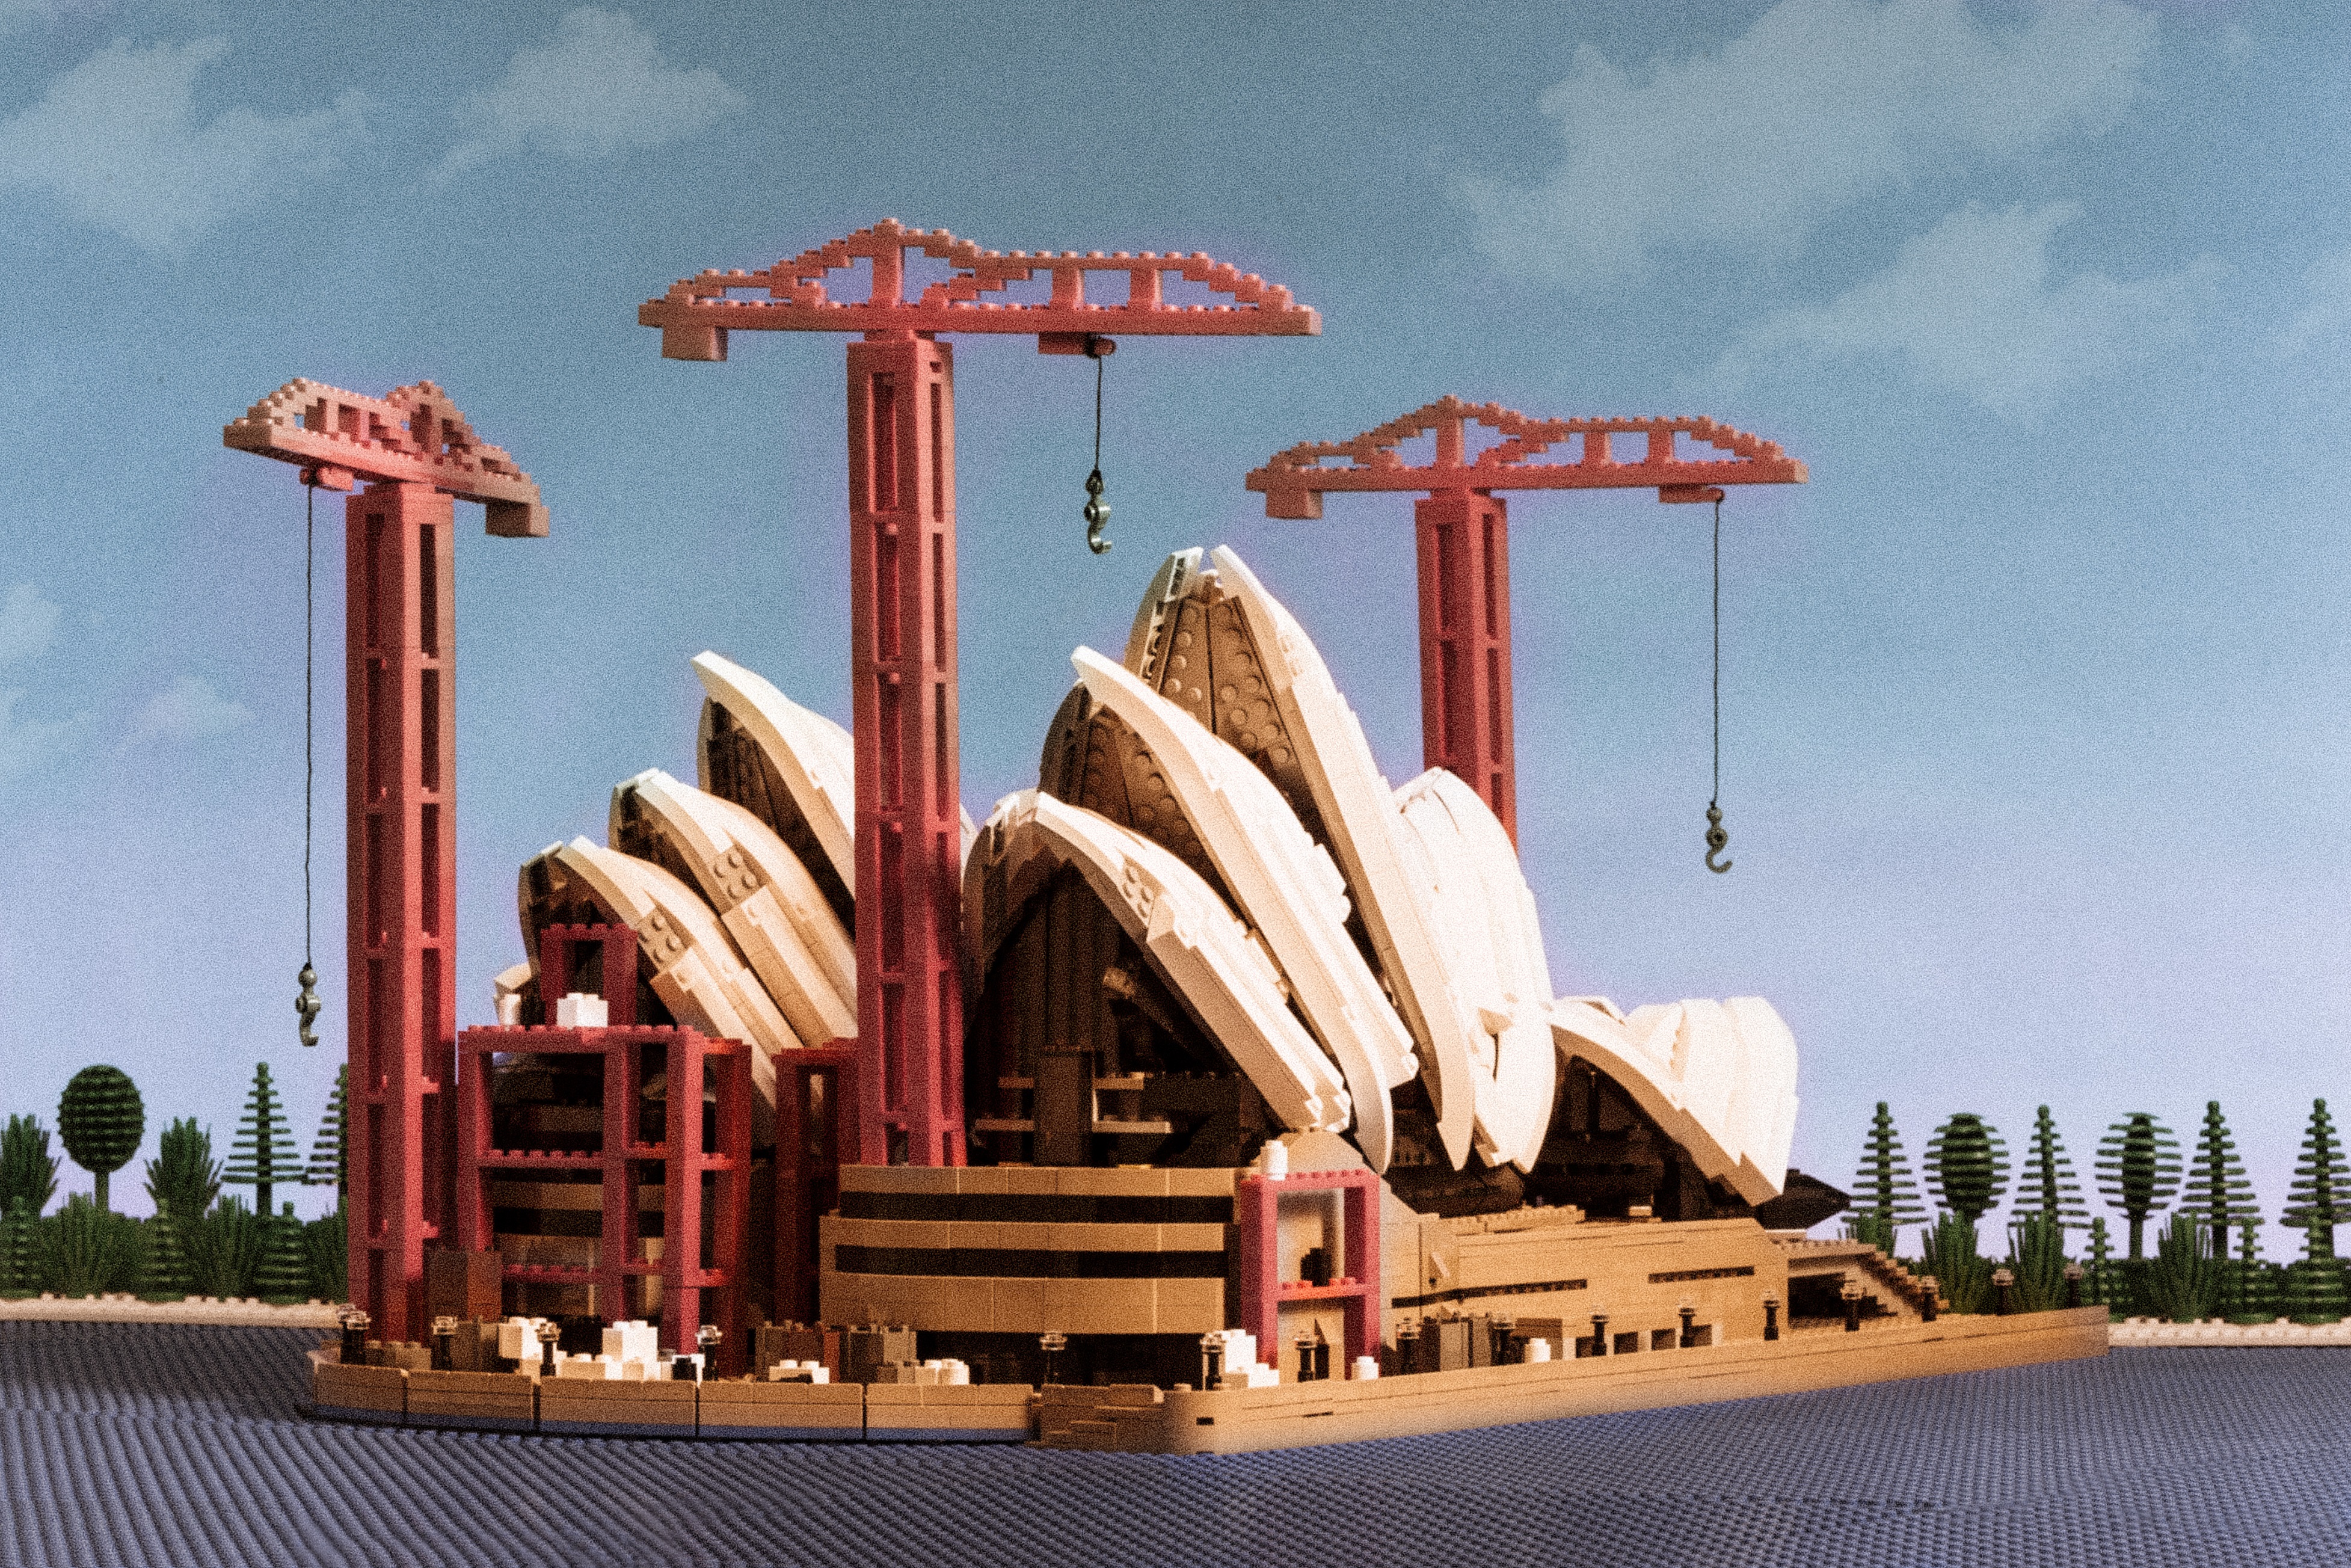 Iconic Shots of the Lego Sydney Opera House - Jay's Blog